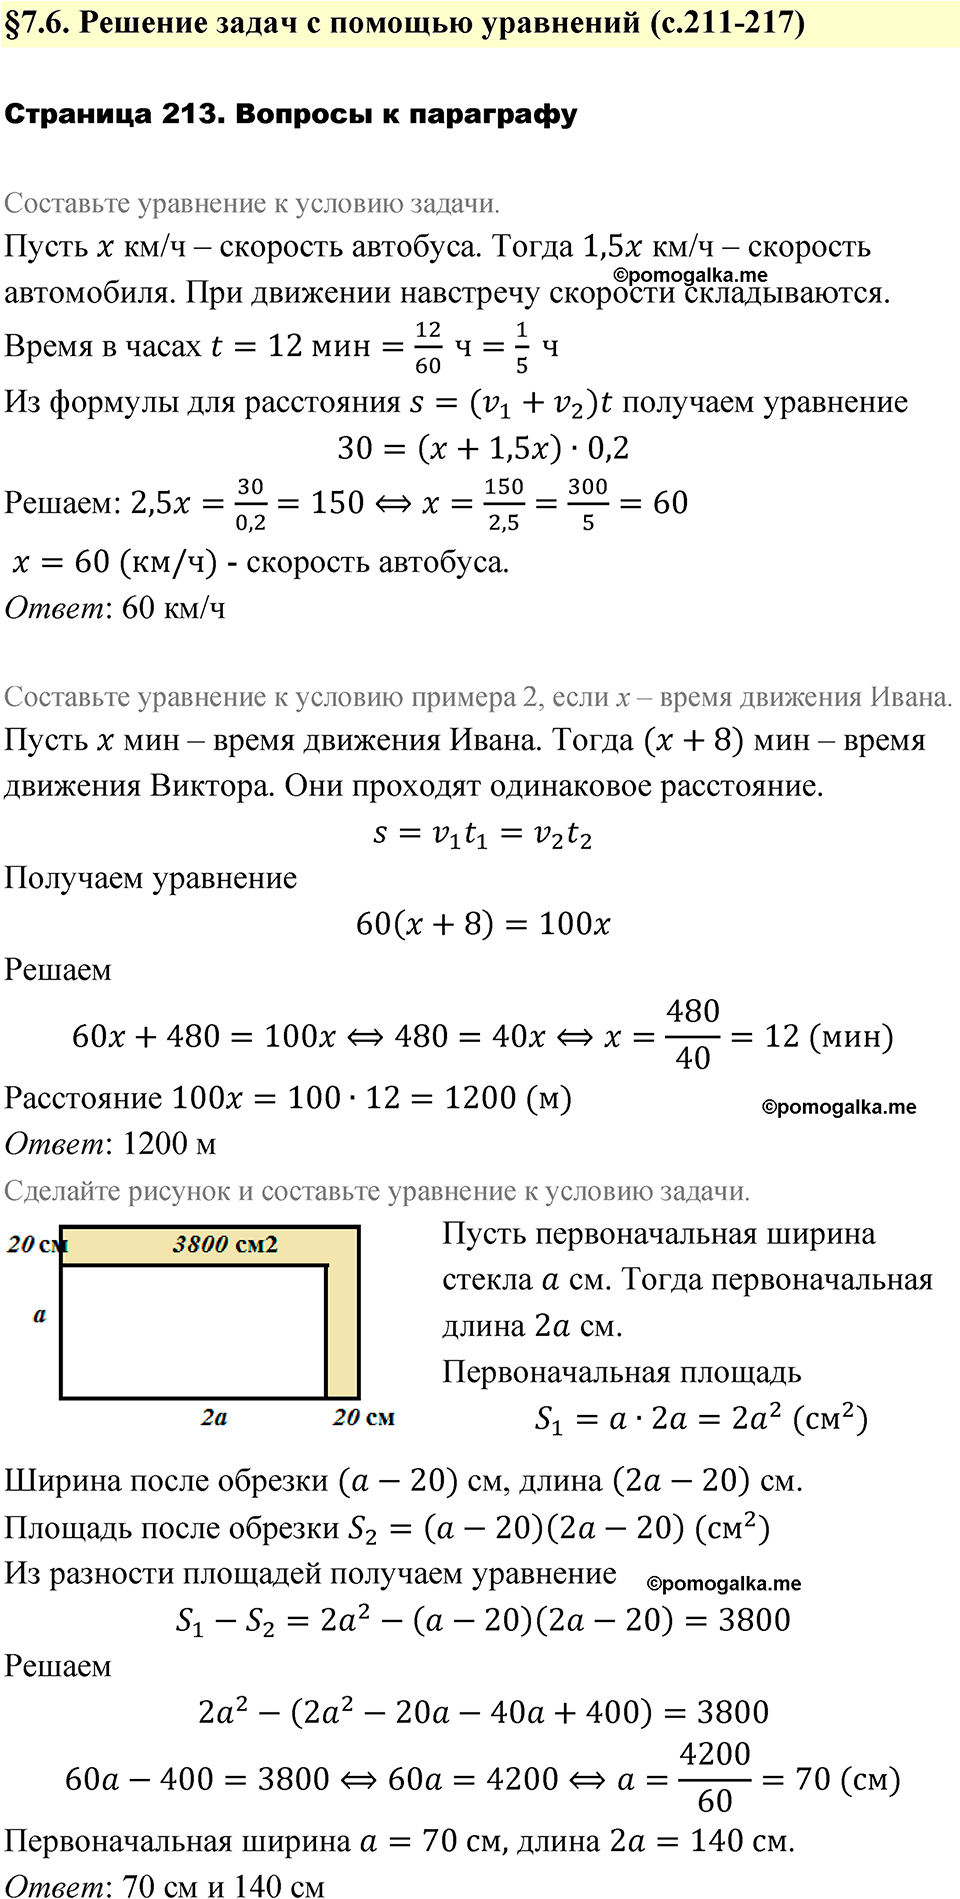 страница 213 вопросы после §7.6 алгебра 7 класс Дорофеев 2022 год